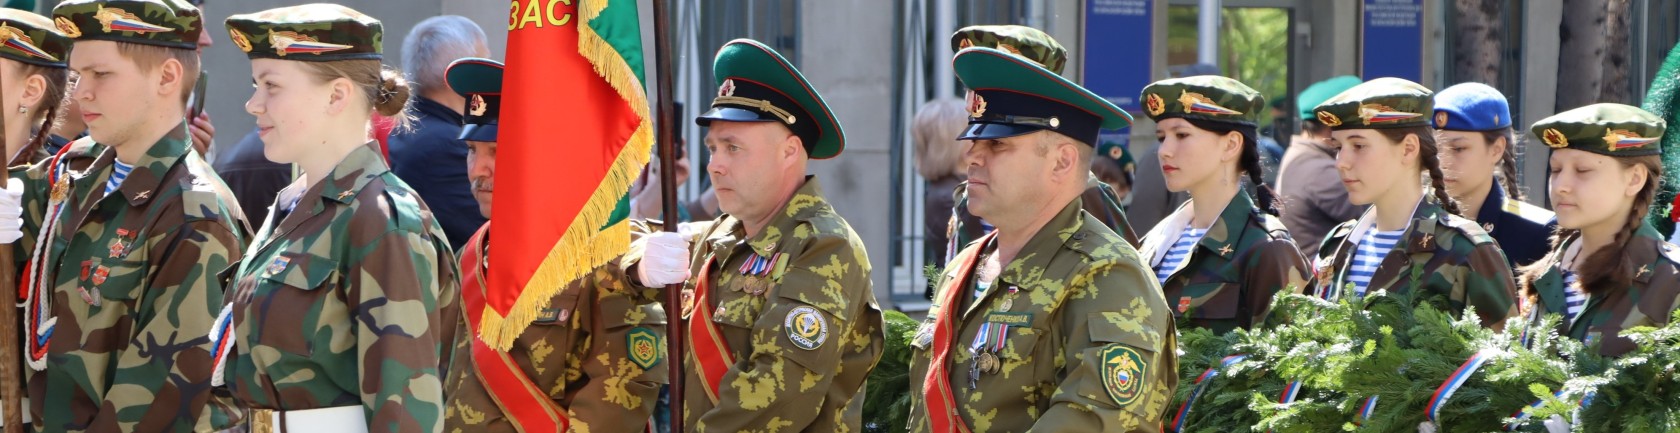 Палата ветеранских организаций ГА края отметила 105-летие пограничных войск